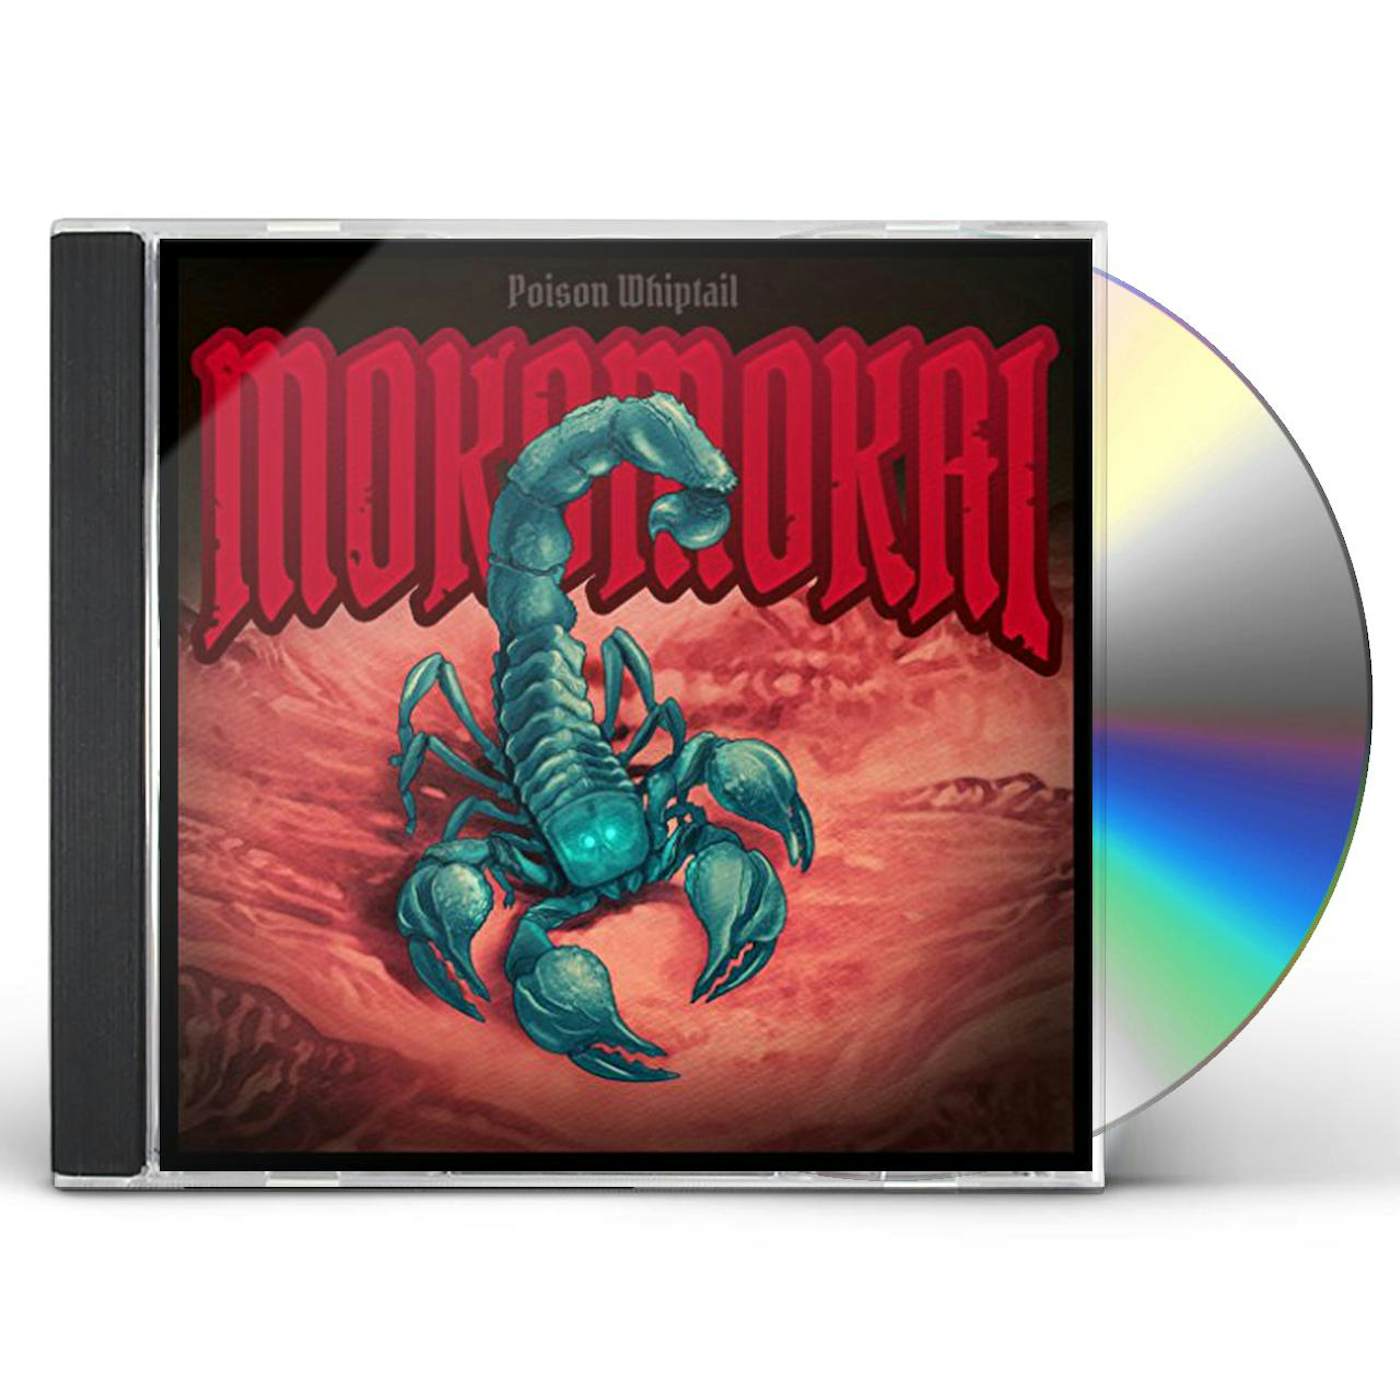 Mokomokai POISON WHIPTAIL CD